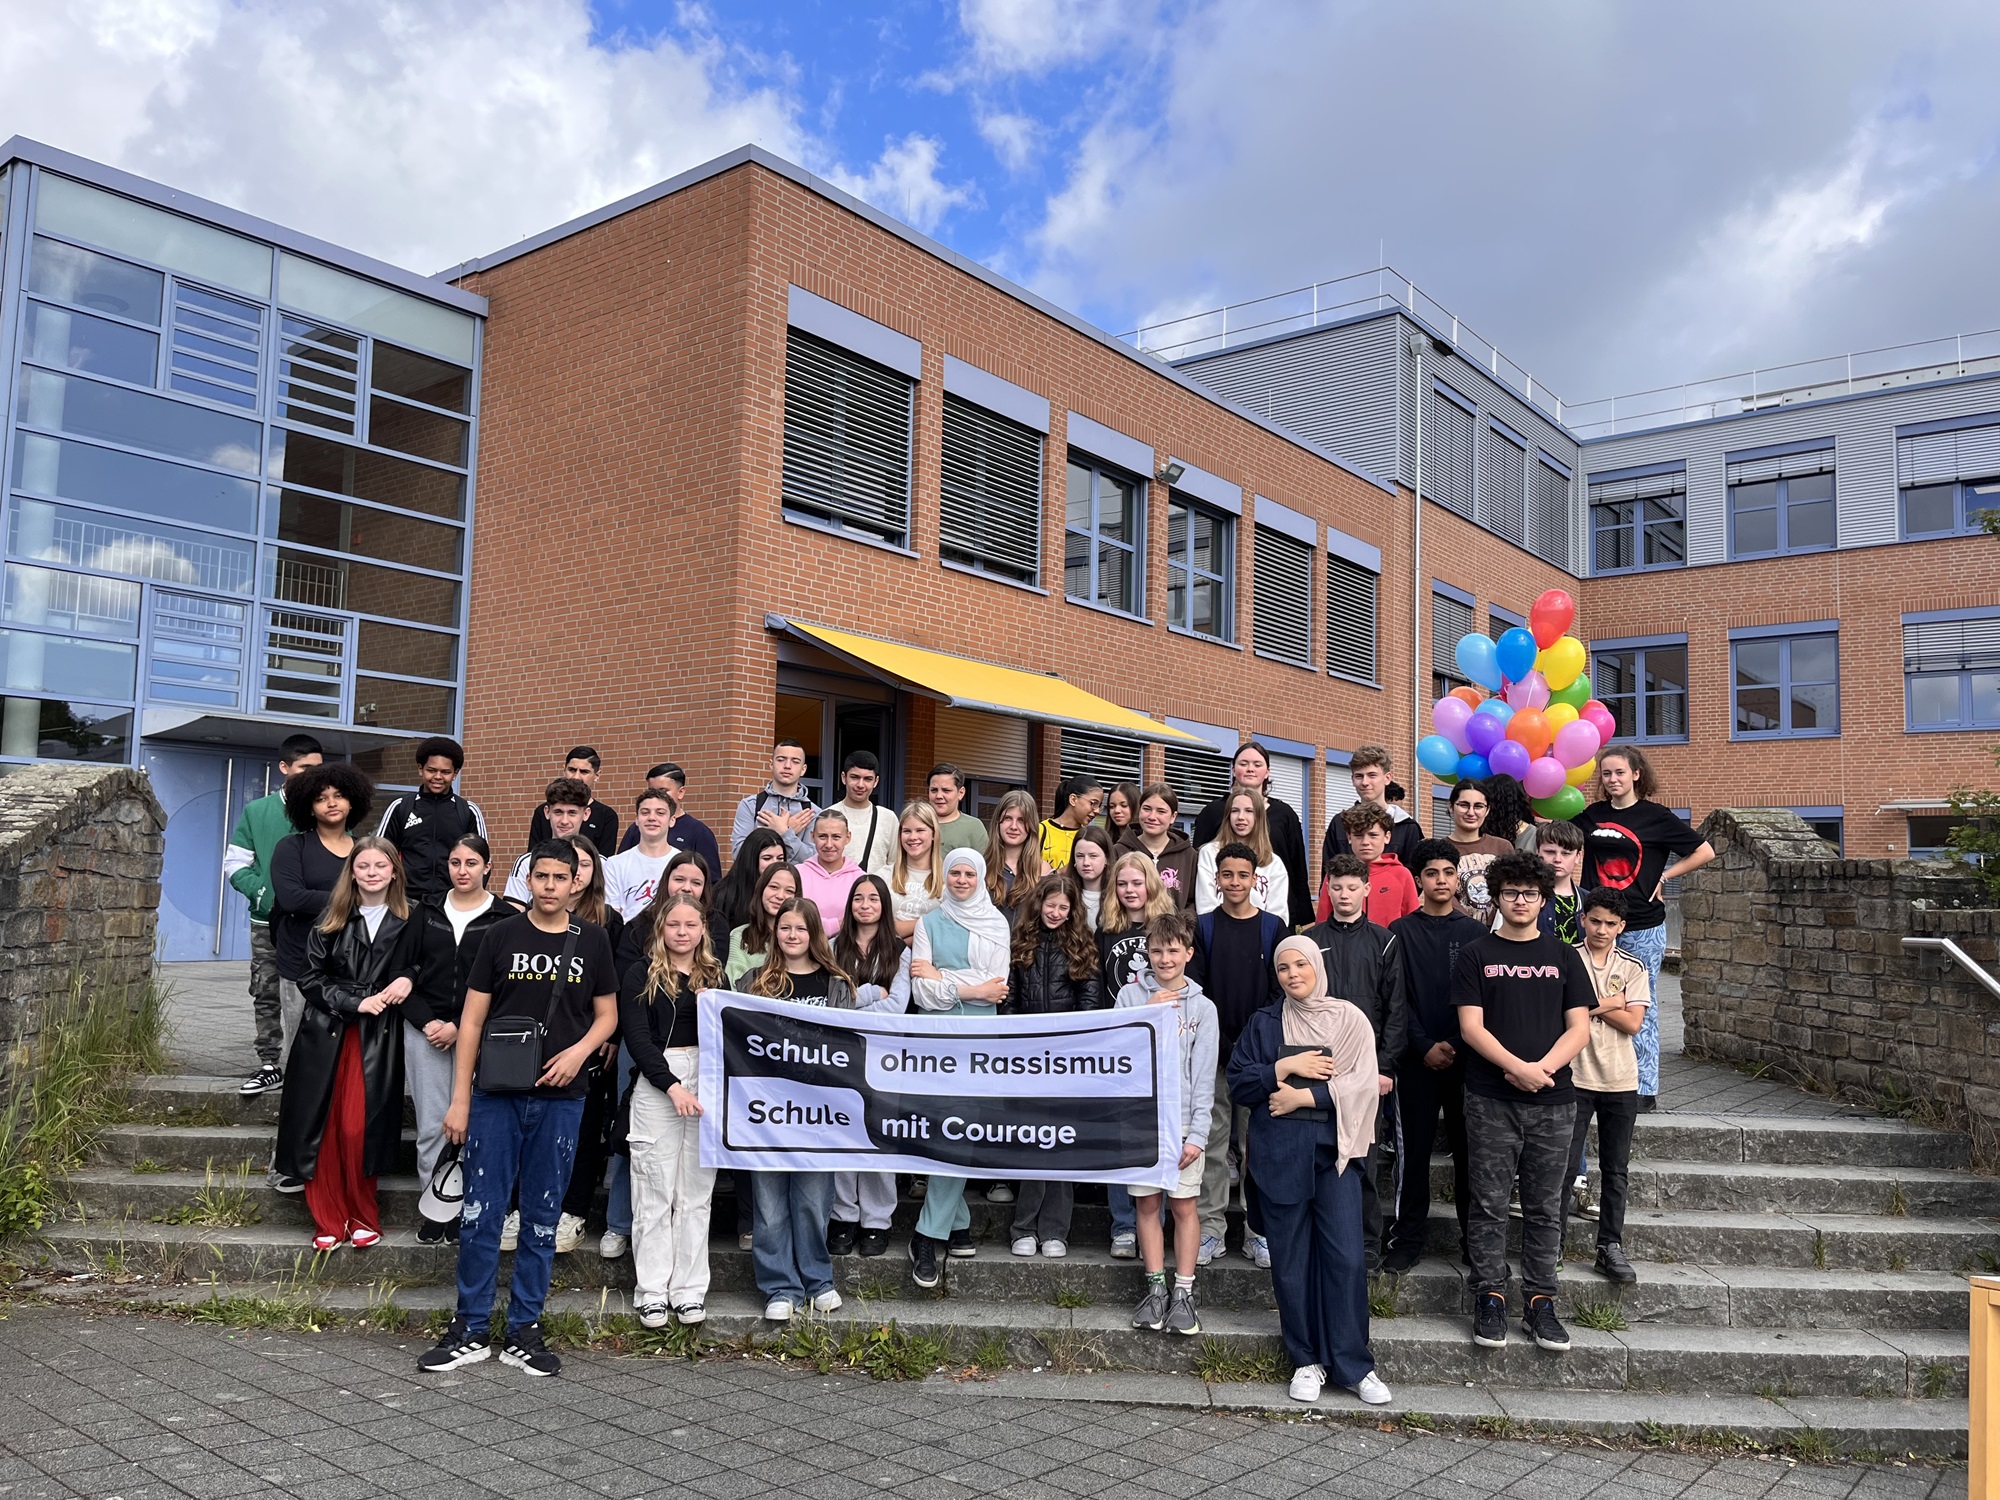 Tag der Vielfalt an der Europaschule Dortmund – Ein Tag für Respekt und Toleranz an unserer Schule